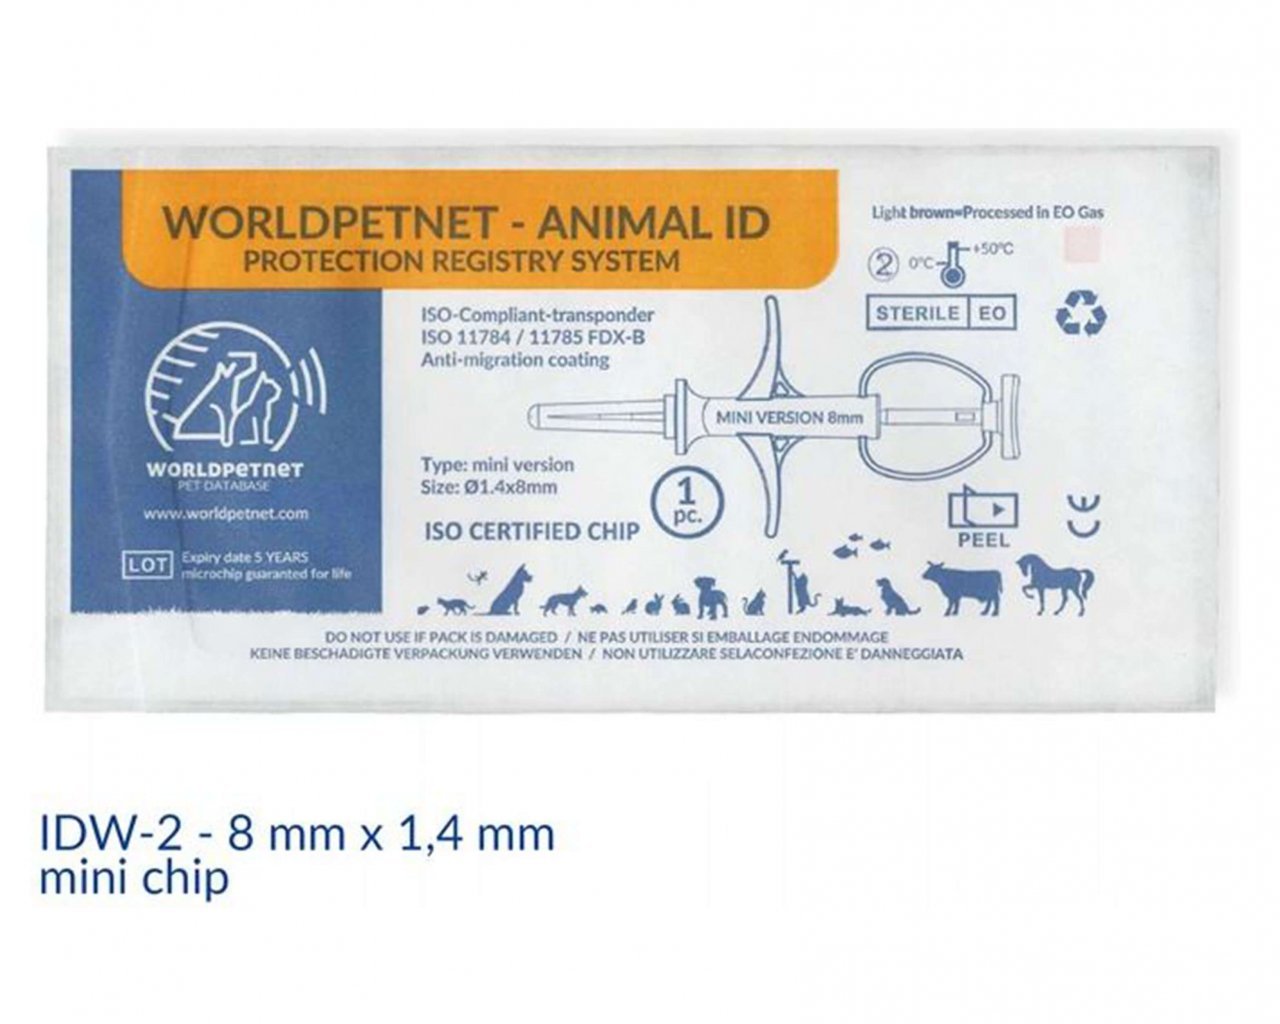 TIERKENNZEICHNUNG - TIERCHIP INTERNATIONAL MICROCHIP IDW-2 (CODE 900) 8MMX1.4MM MINI - Mikrochip für Hunde, Tiere, Tierkennzeichnungsleser #13